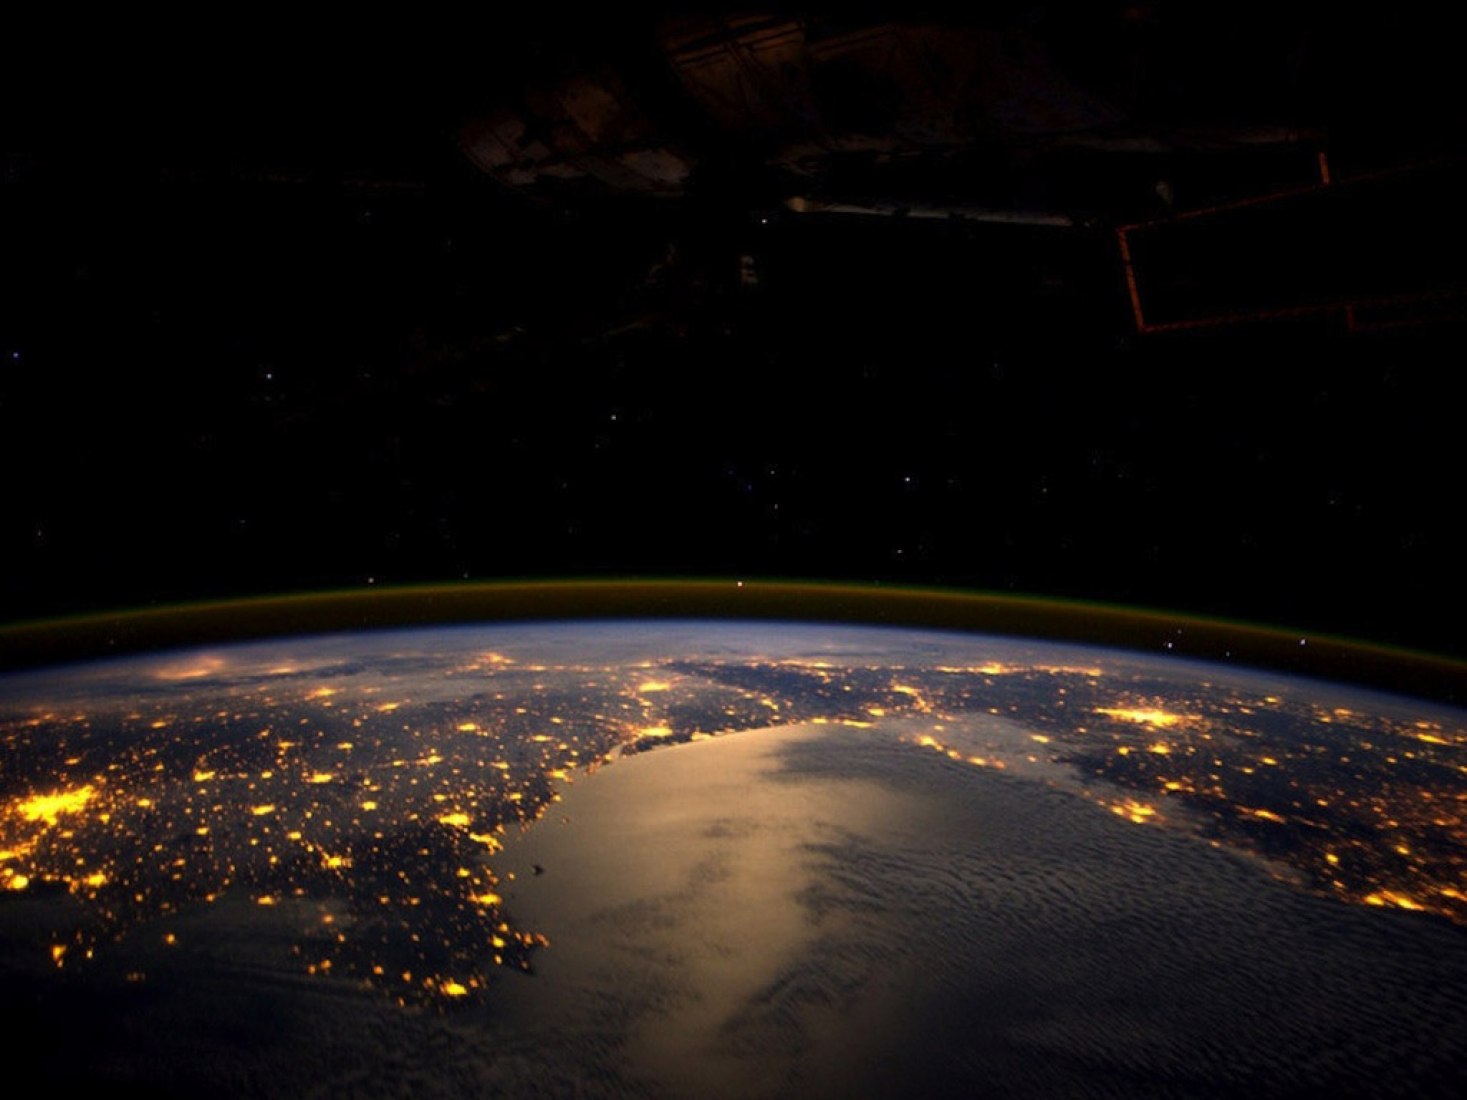 Europe at night. Photograph ISS/NASA.